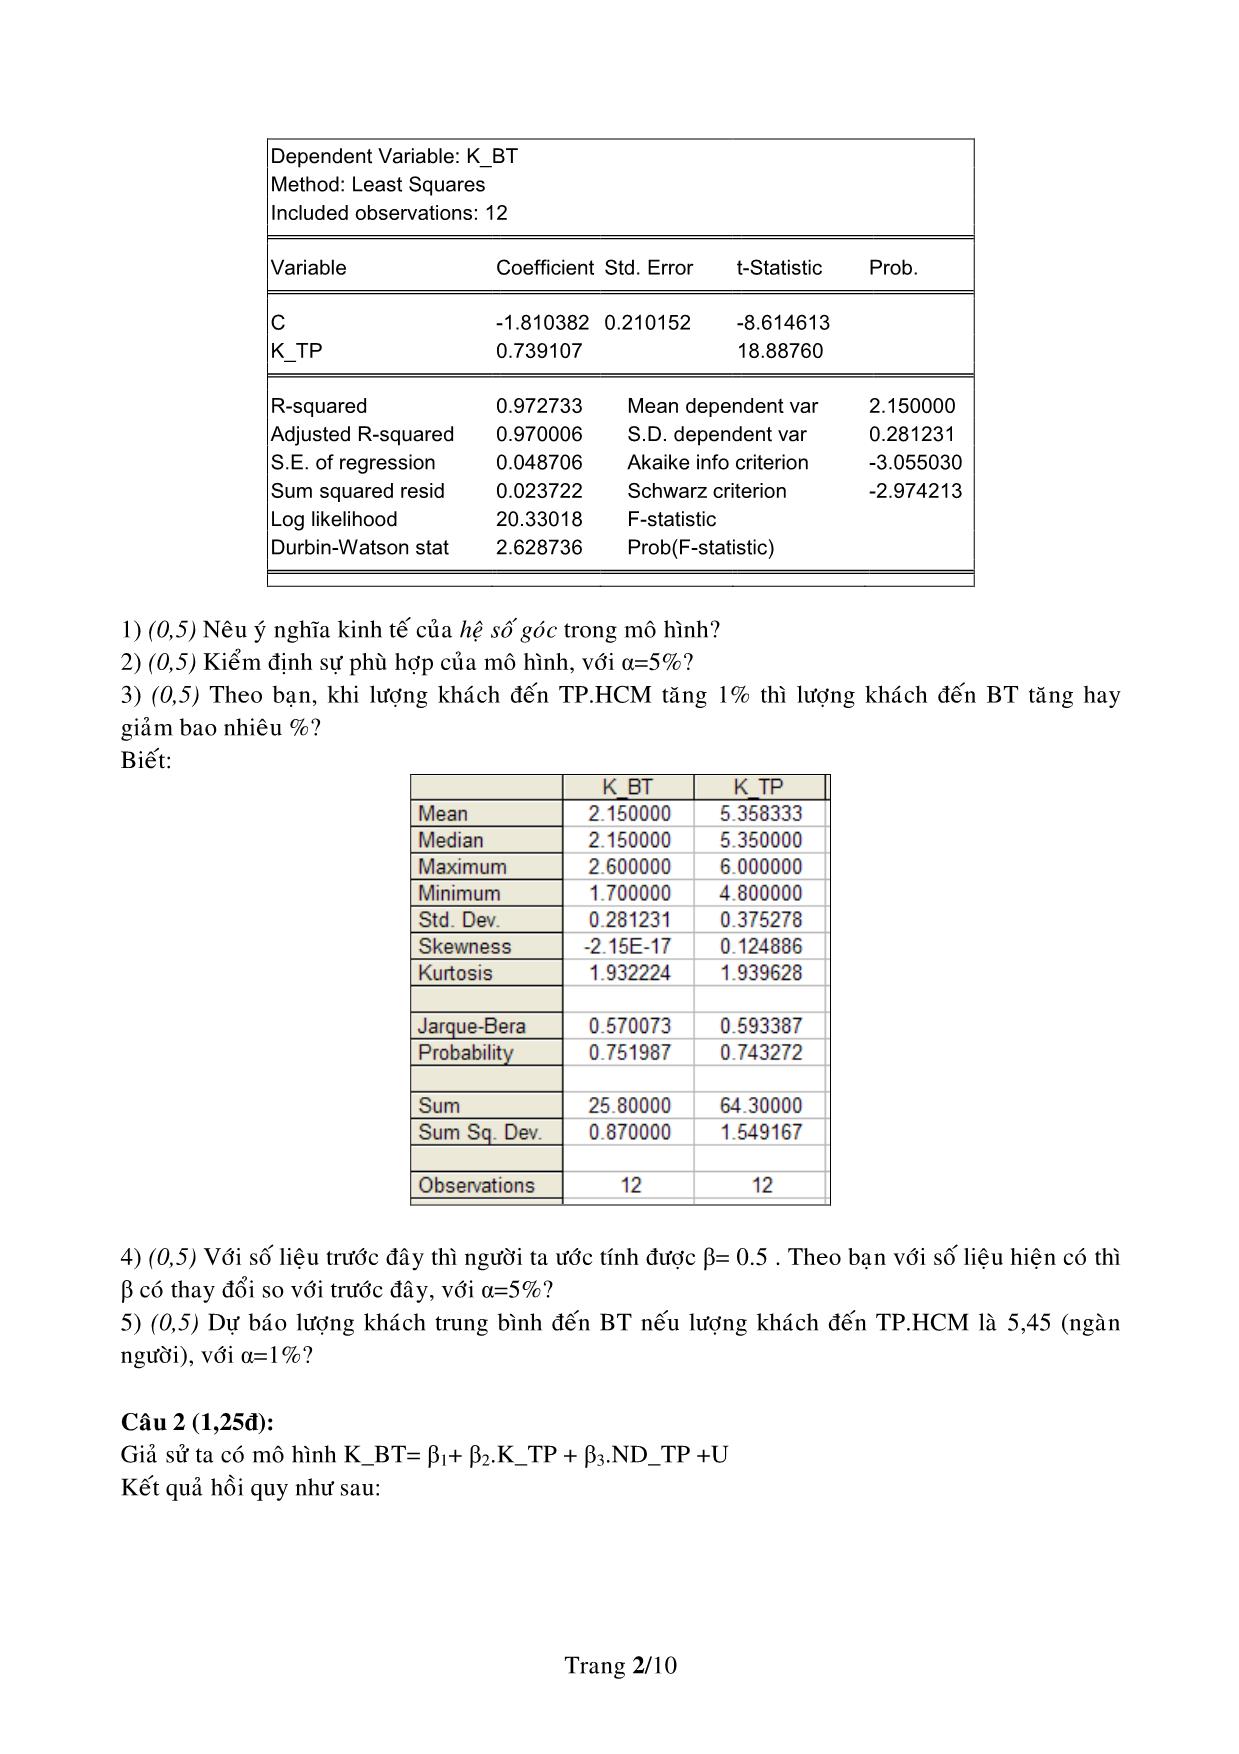 Đề thi cuối kỳ môn thi kinh tế lượng 2006-2007 trang 2